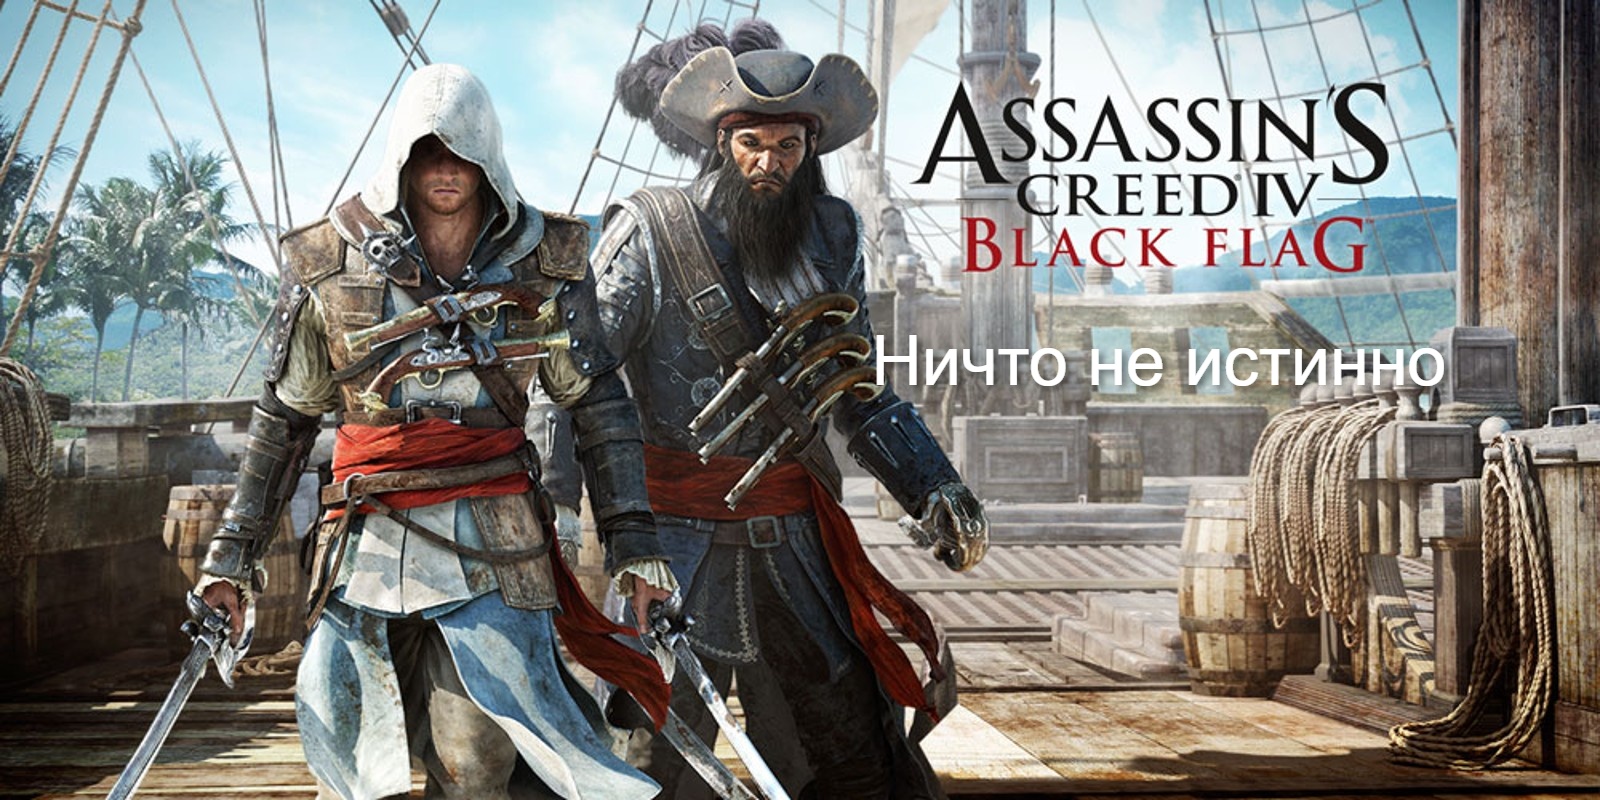 Прохождение Assassin's Creed 4- Black Flag (Чёрный флаг). Ничто не истинно.mp4